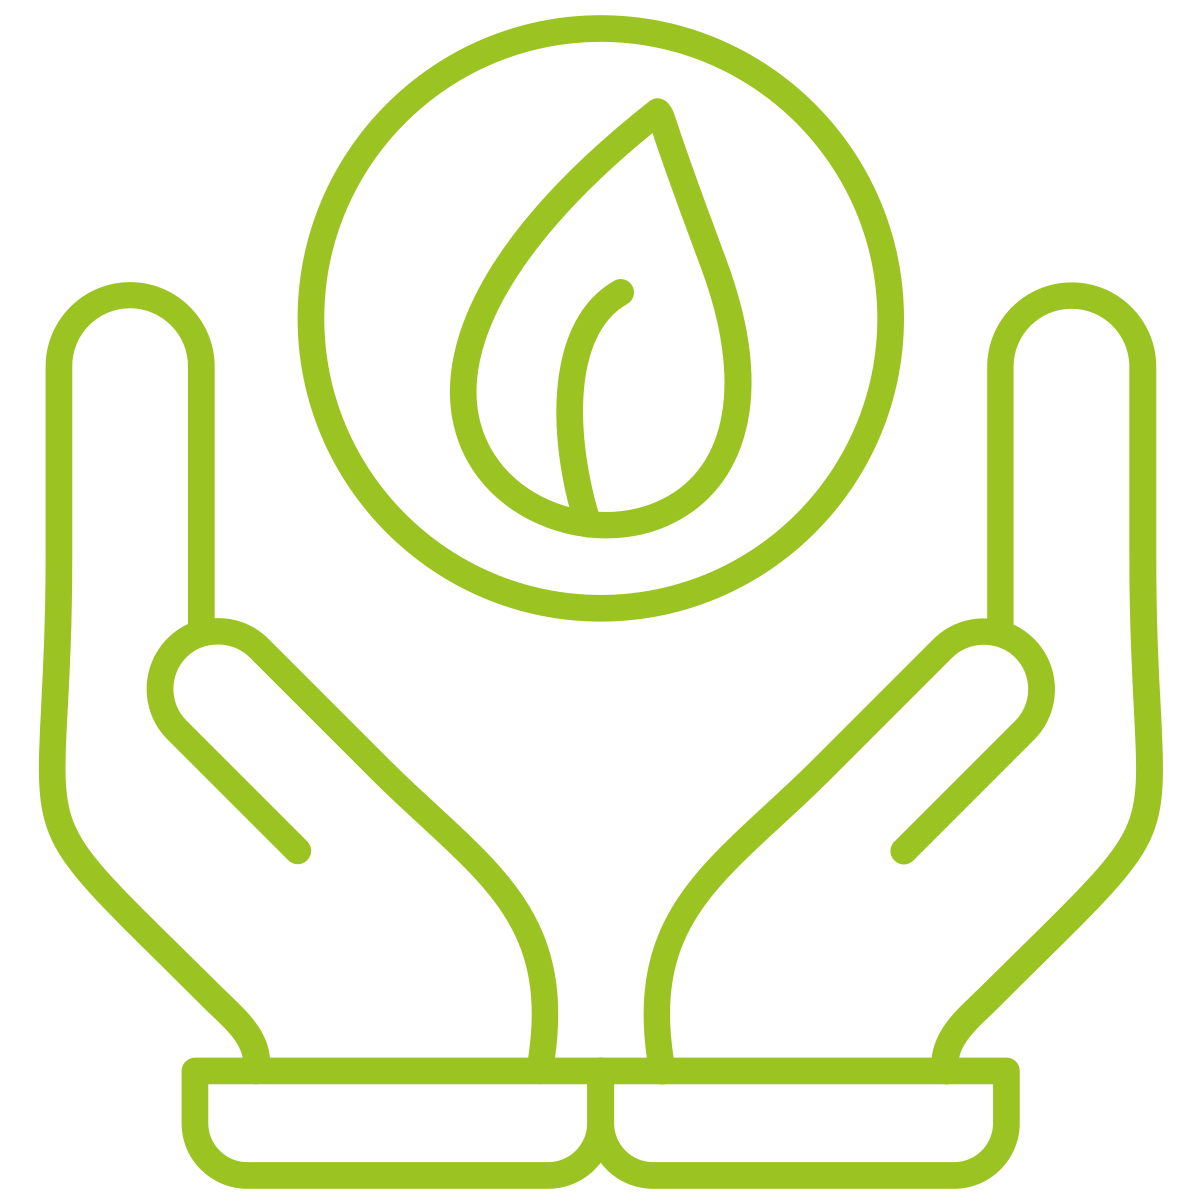 Eine grüne Hand hält ein Blatt auf schwarzem Hintergrund und betont die ökologische Nachhaltigkeit.